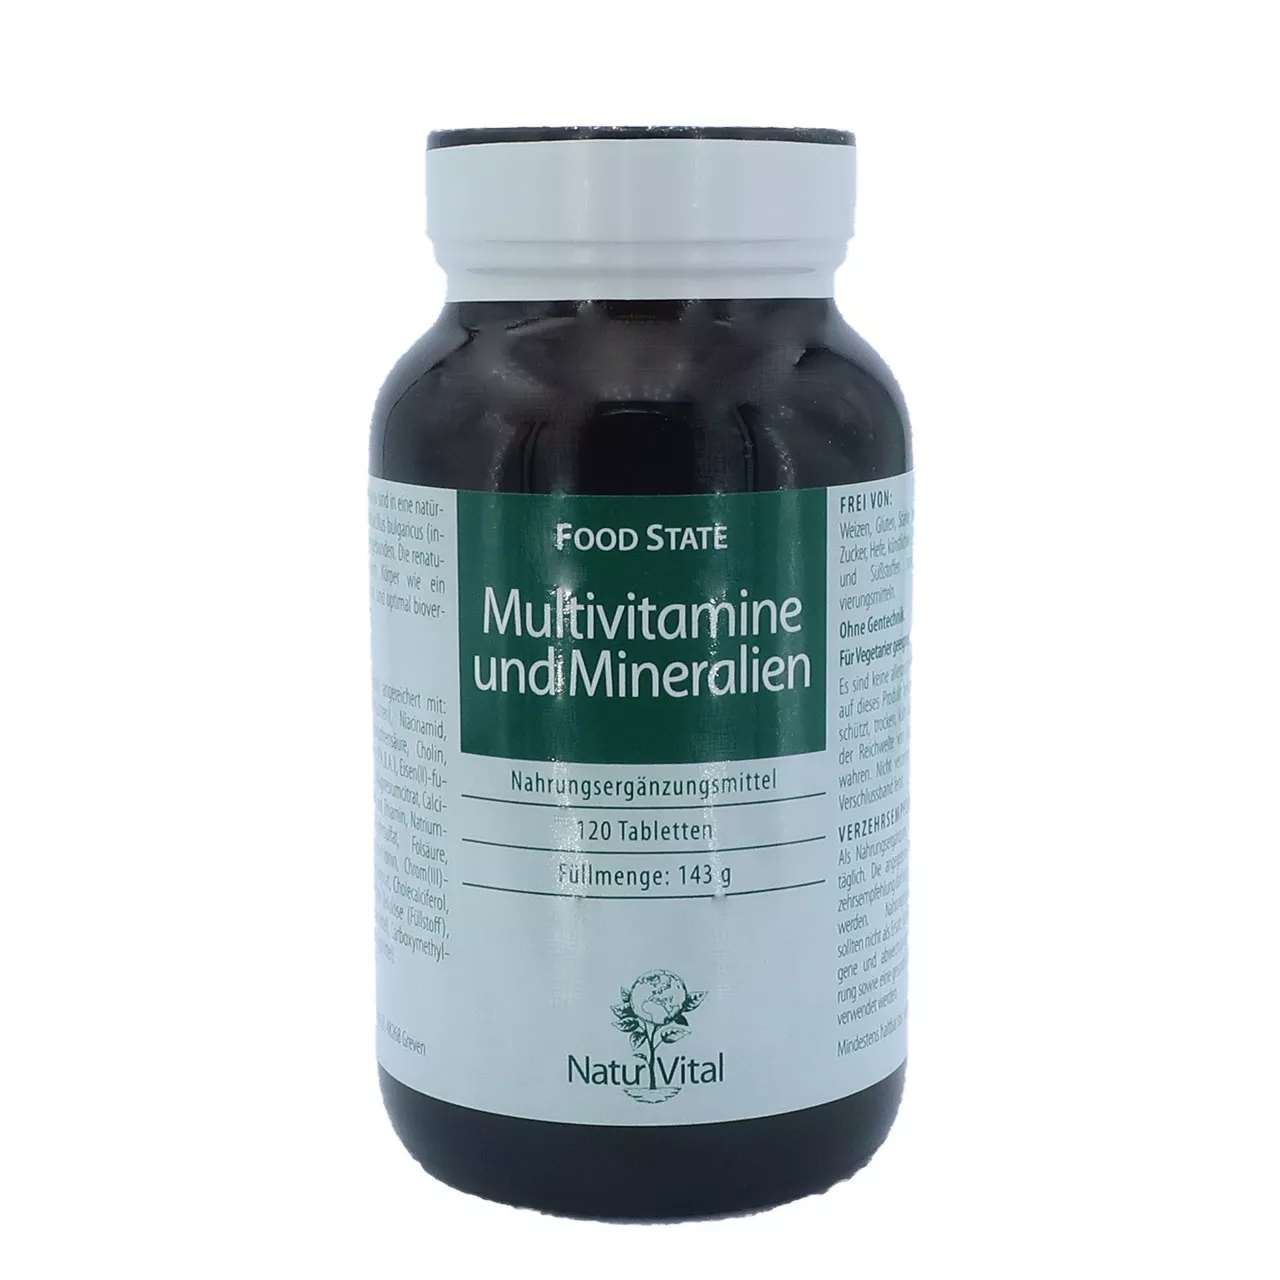 Multivitamine und Mineralien von Natur Vital beinhaltet 120 Tabletten